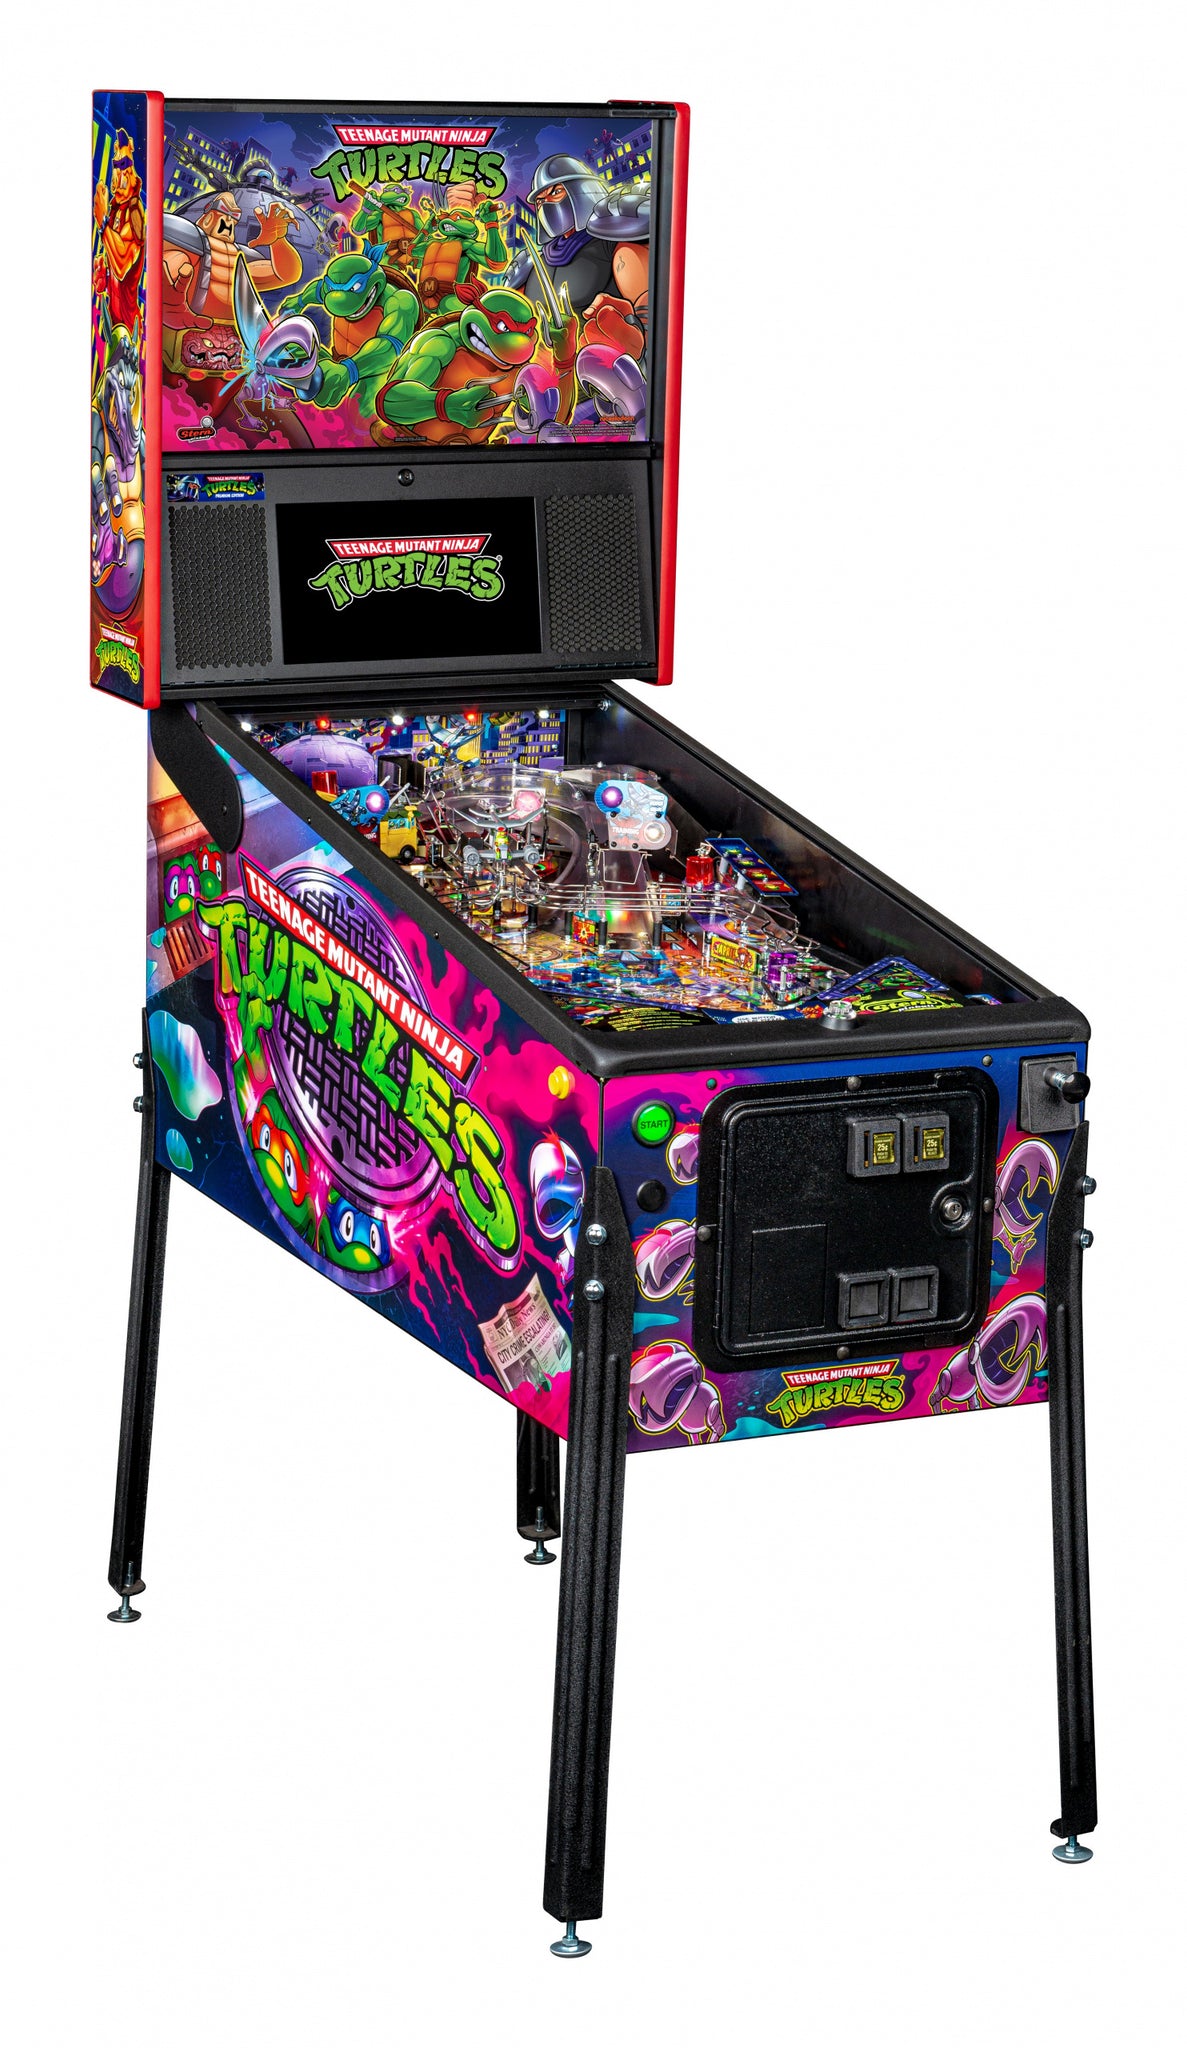 2020 Teenage Mutant Ninja Turtles Premium Edition Pinball Machine by Stern